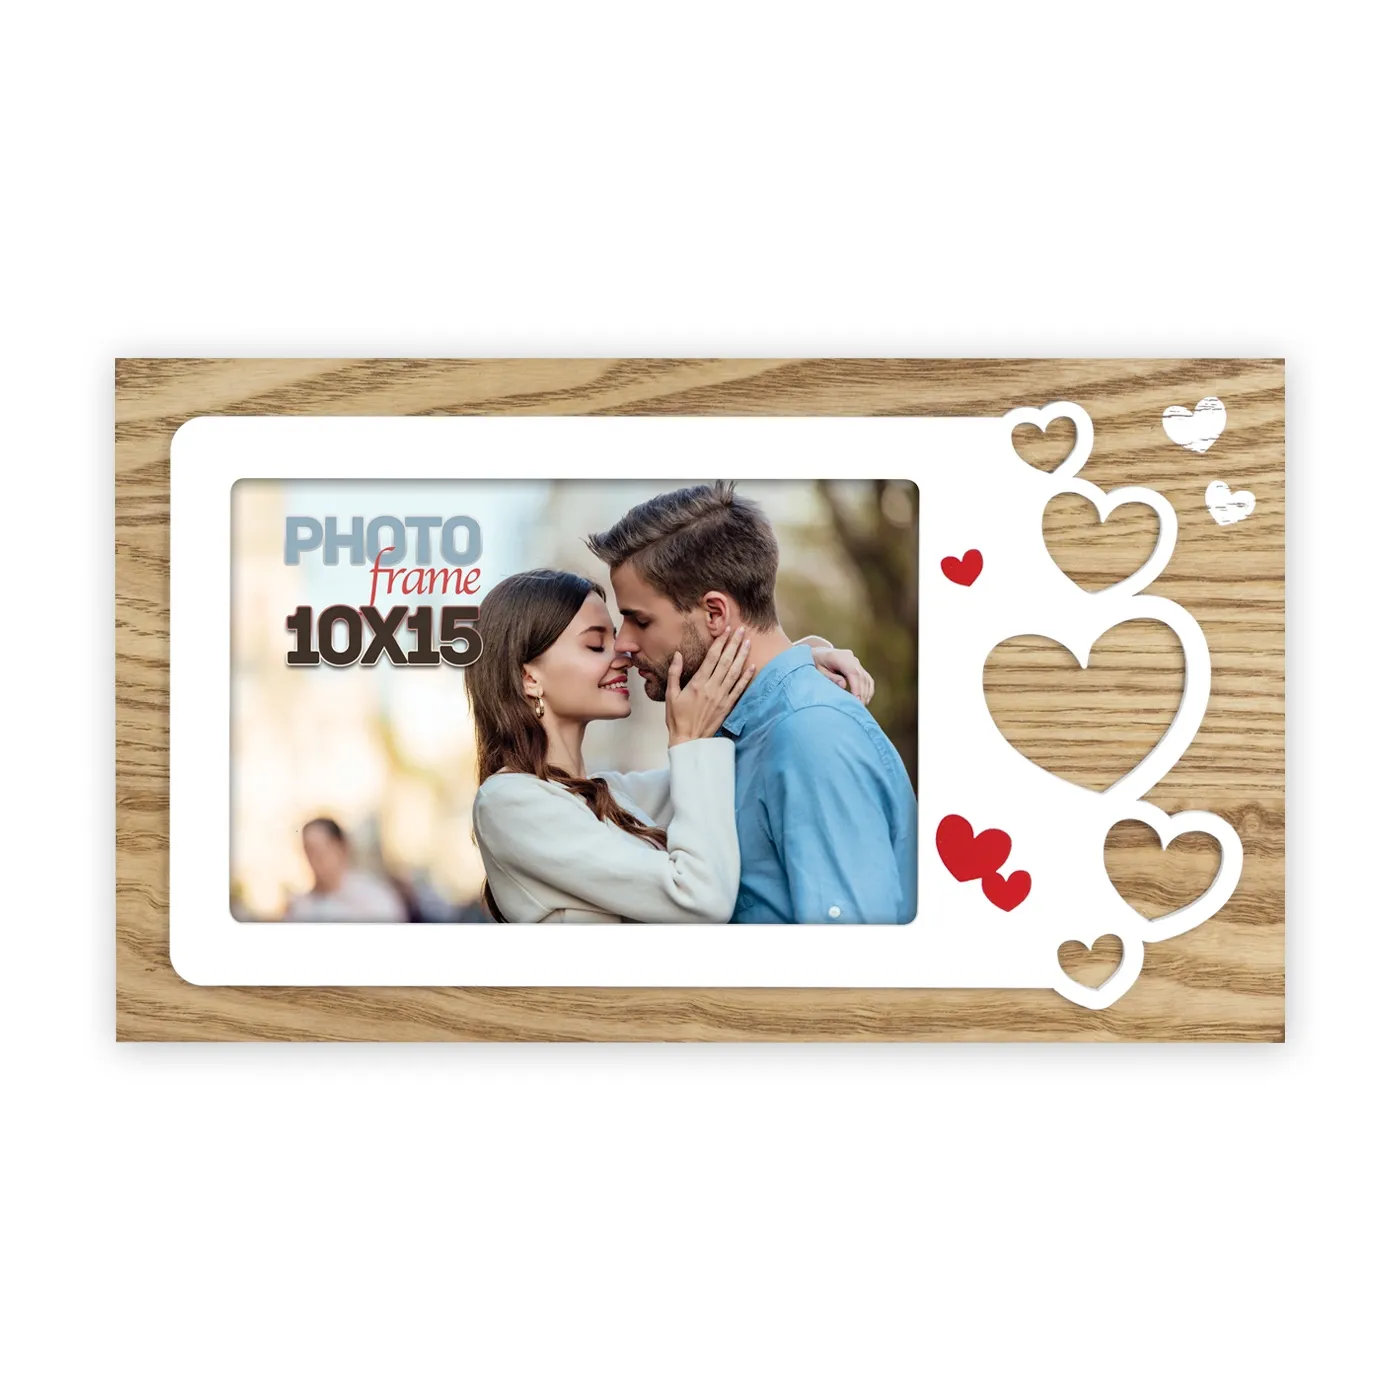 Couple khung ảnh tùy chỉnh Antique 4x6 hình ảnh khung ảnh cho valentine's day